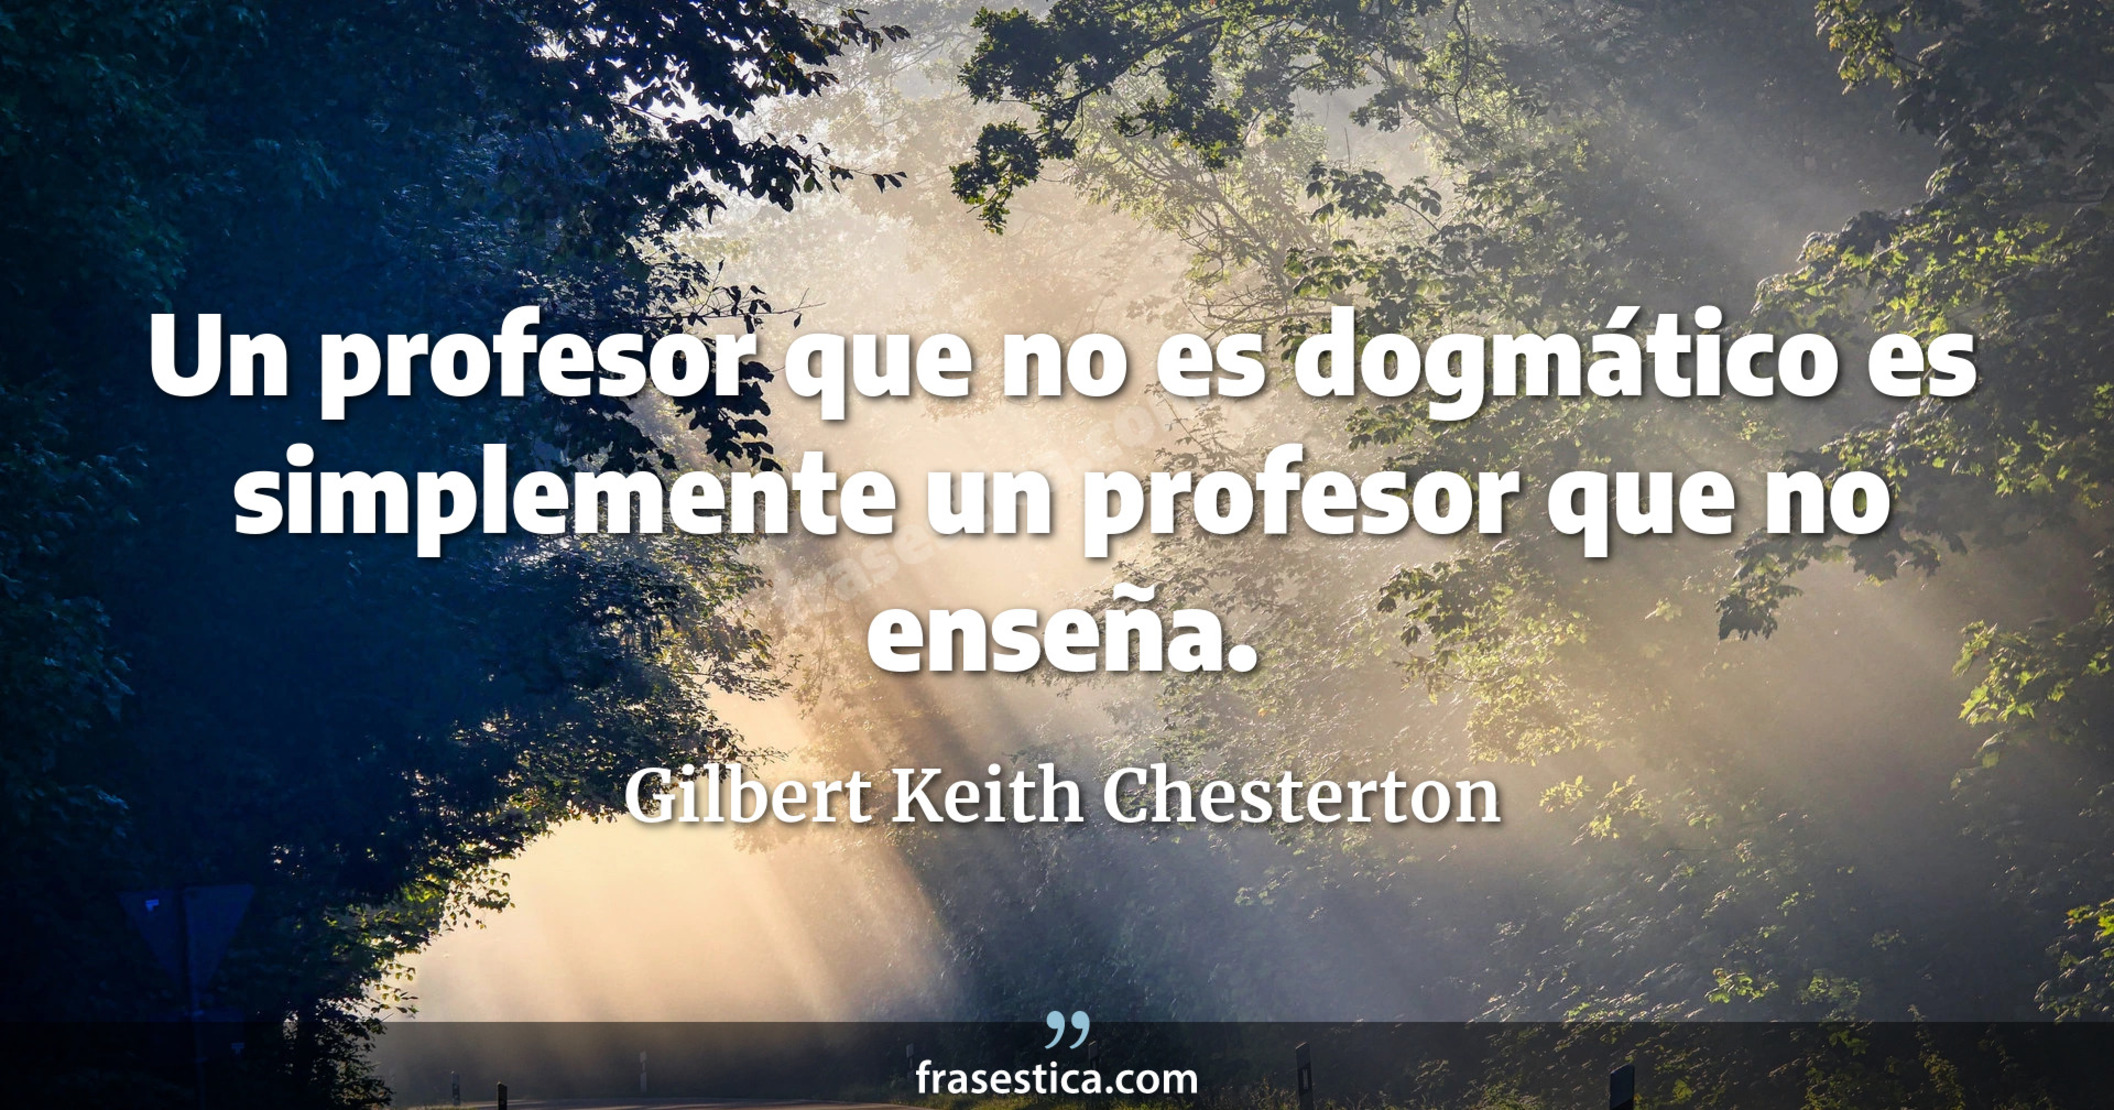 Un profesor que no es dogmático es simplemente un profesor que no enseña. - Gilbert Keith Chesterton